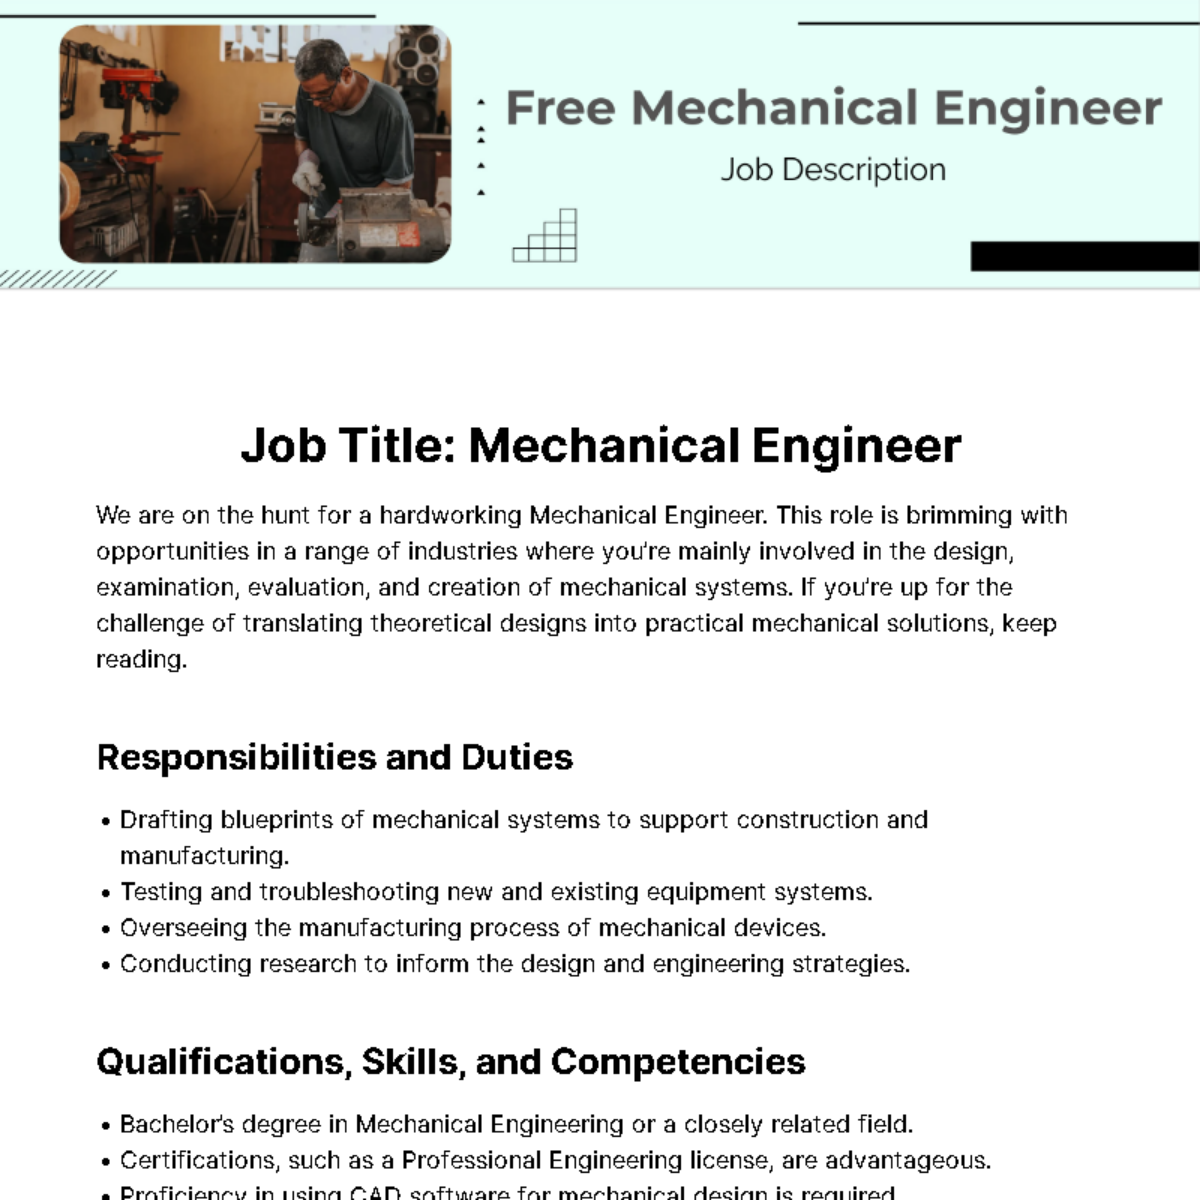 Free Mechanical Engineer Job Description Template